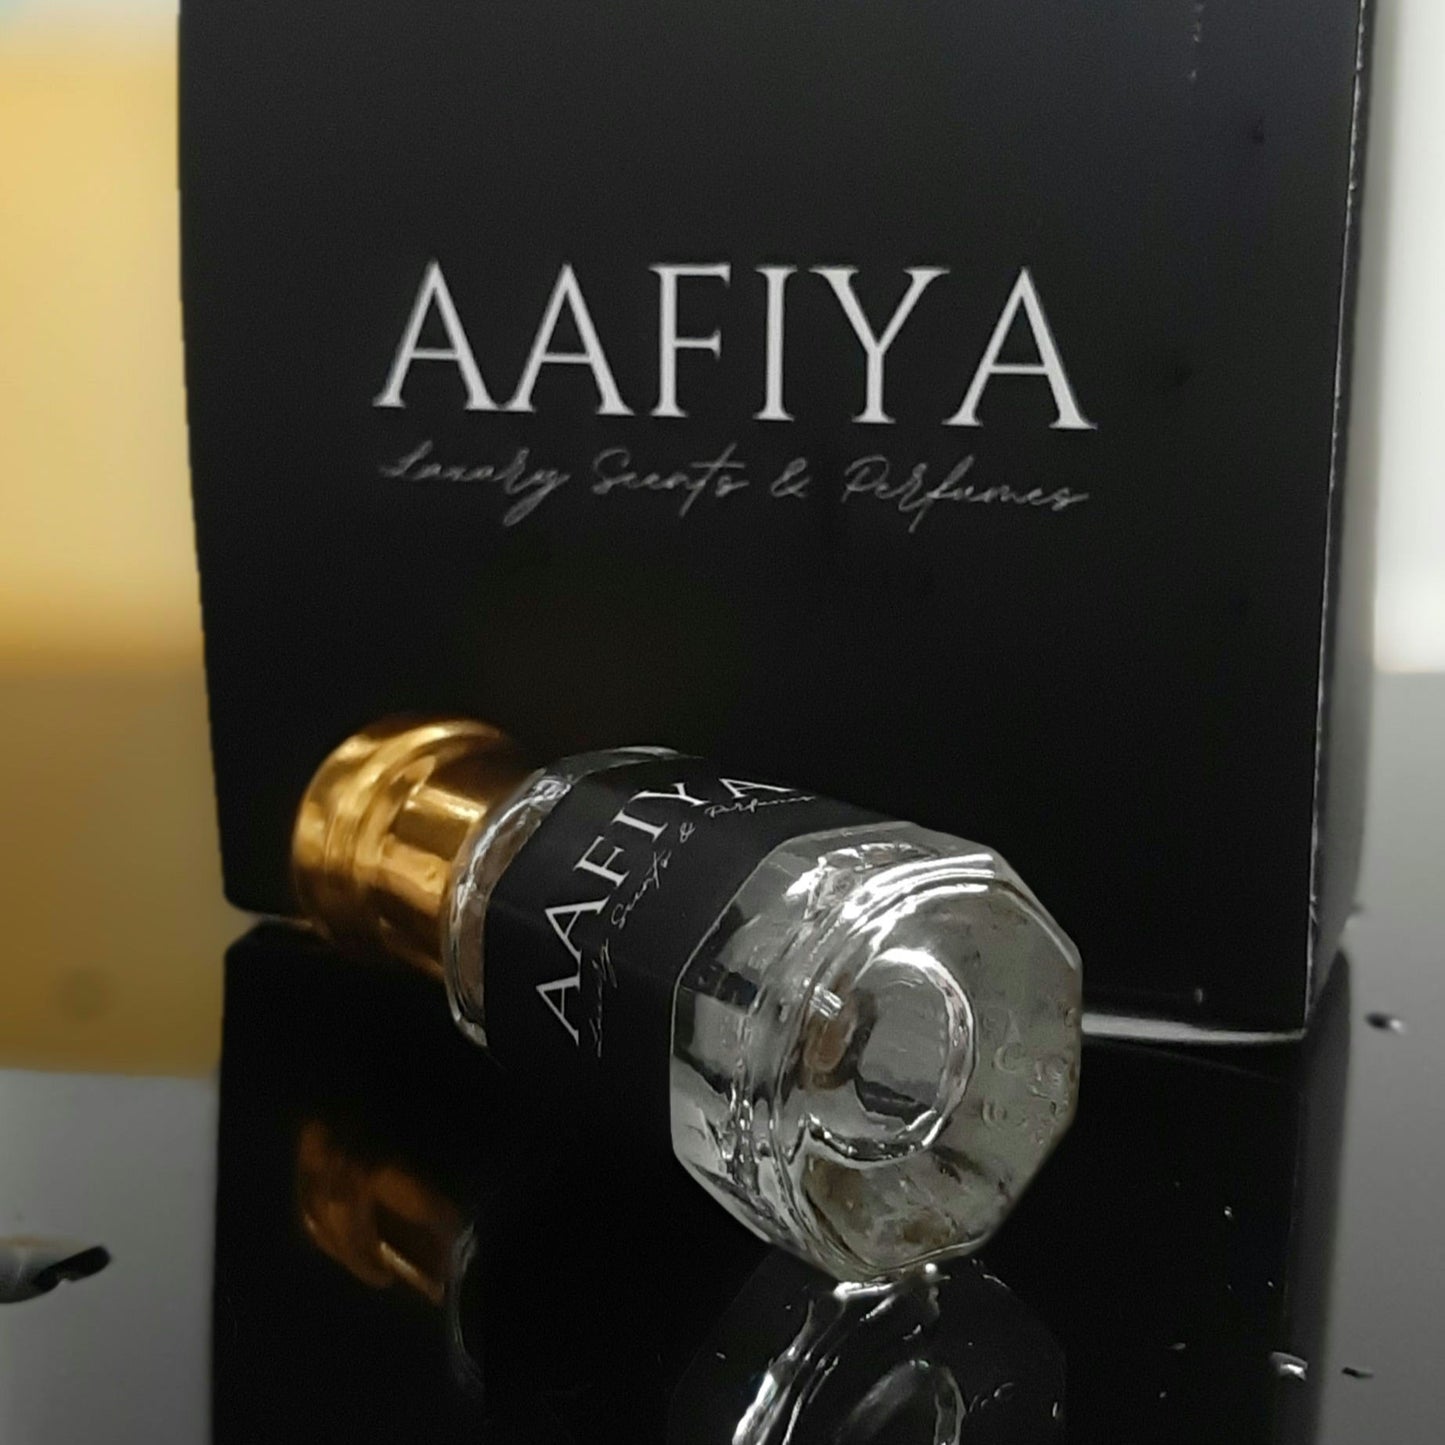 Candy Night - Aafiya Luxury Scents & Perfumes